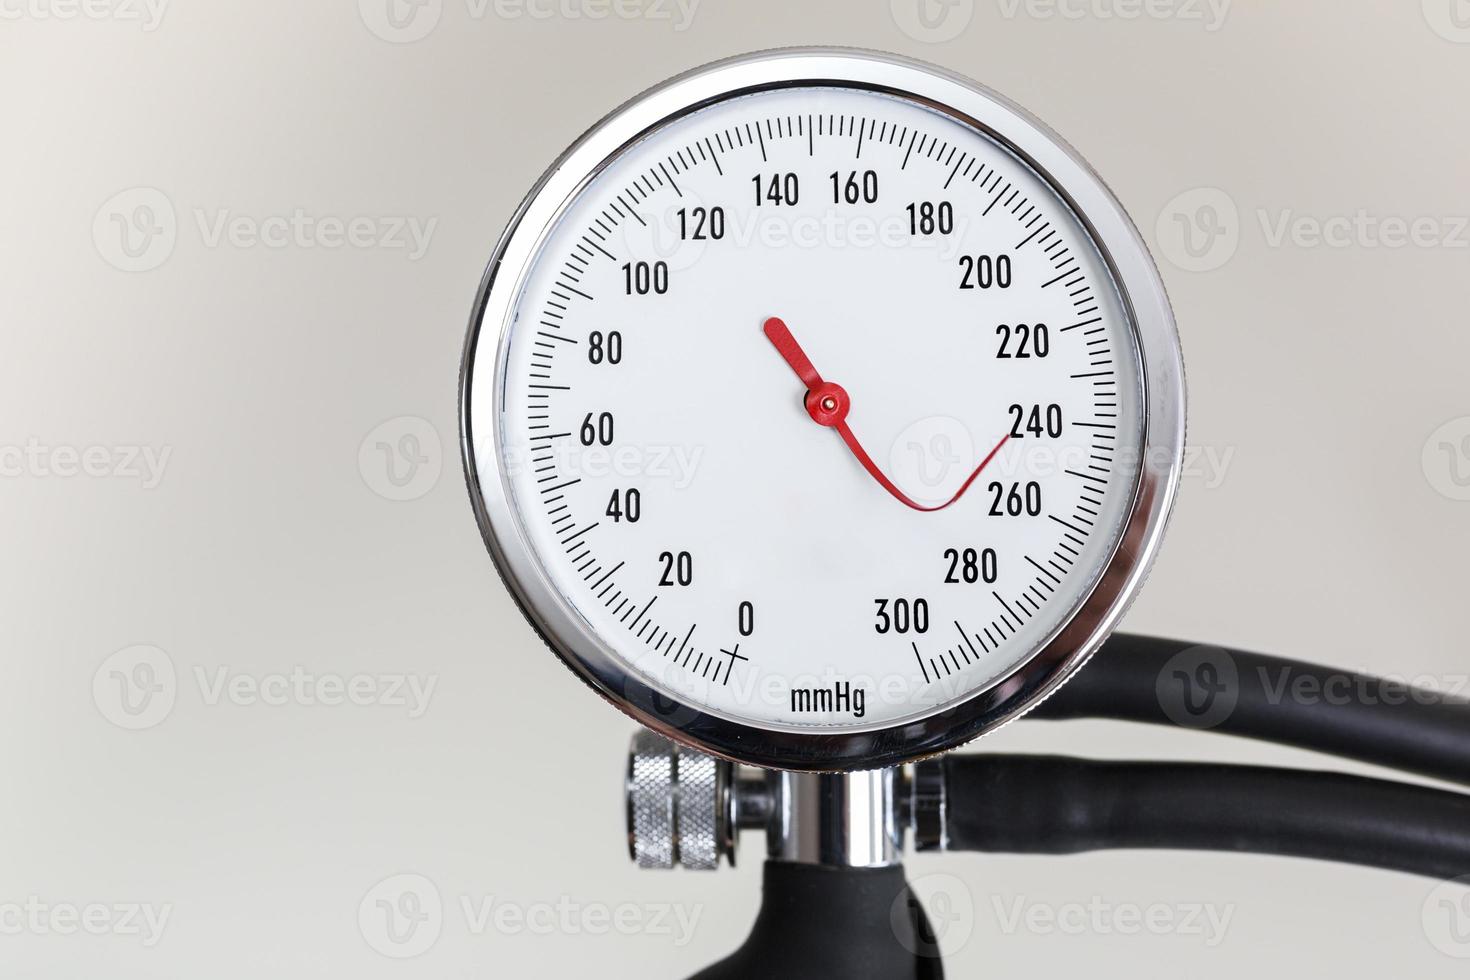 medidor de pressão arterial com agulha indicador dobrada foto